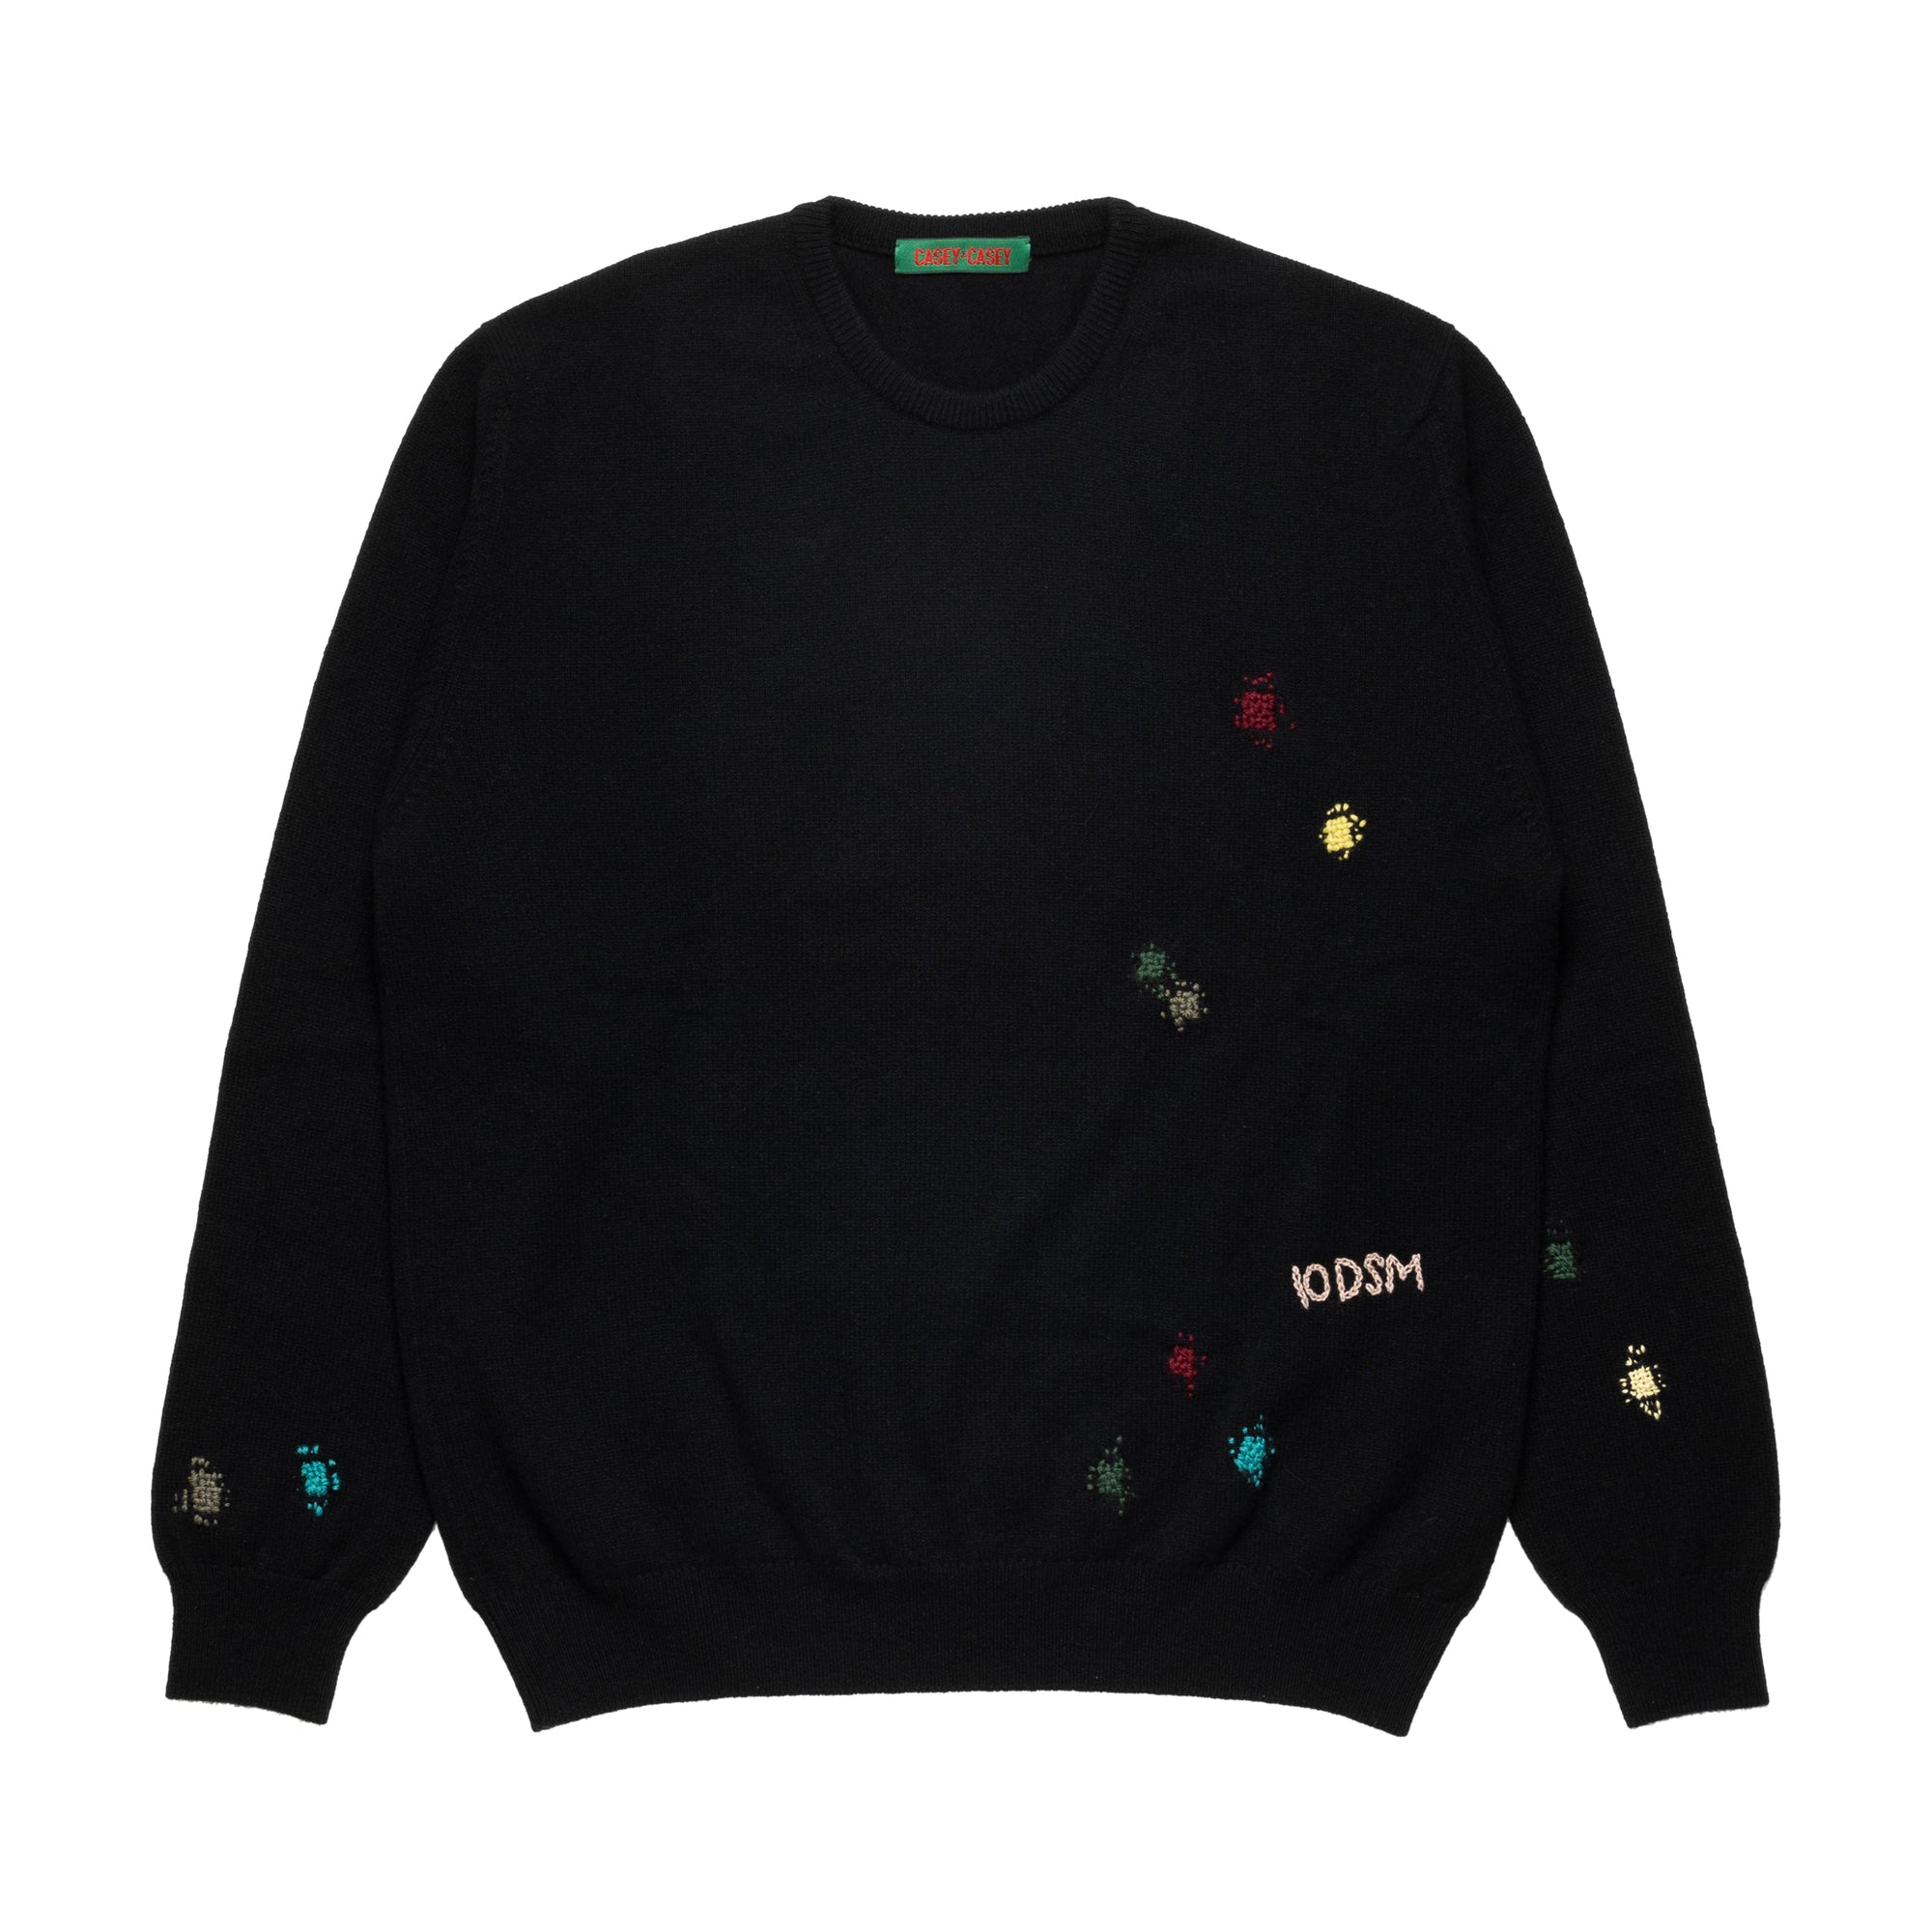 CASEY CASEY - DSM SP Round Neck Sweater  - (Black) view 1